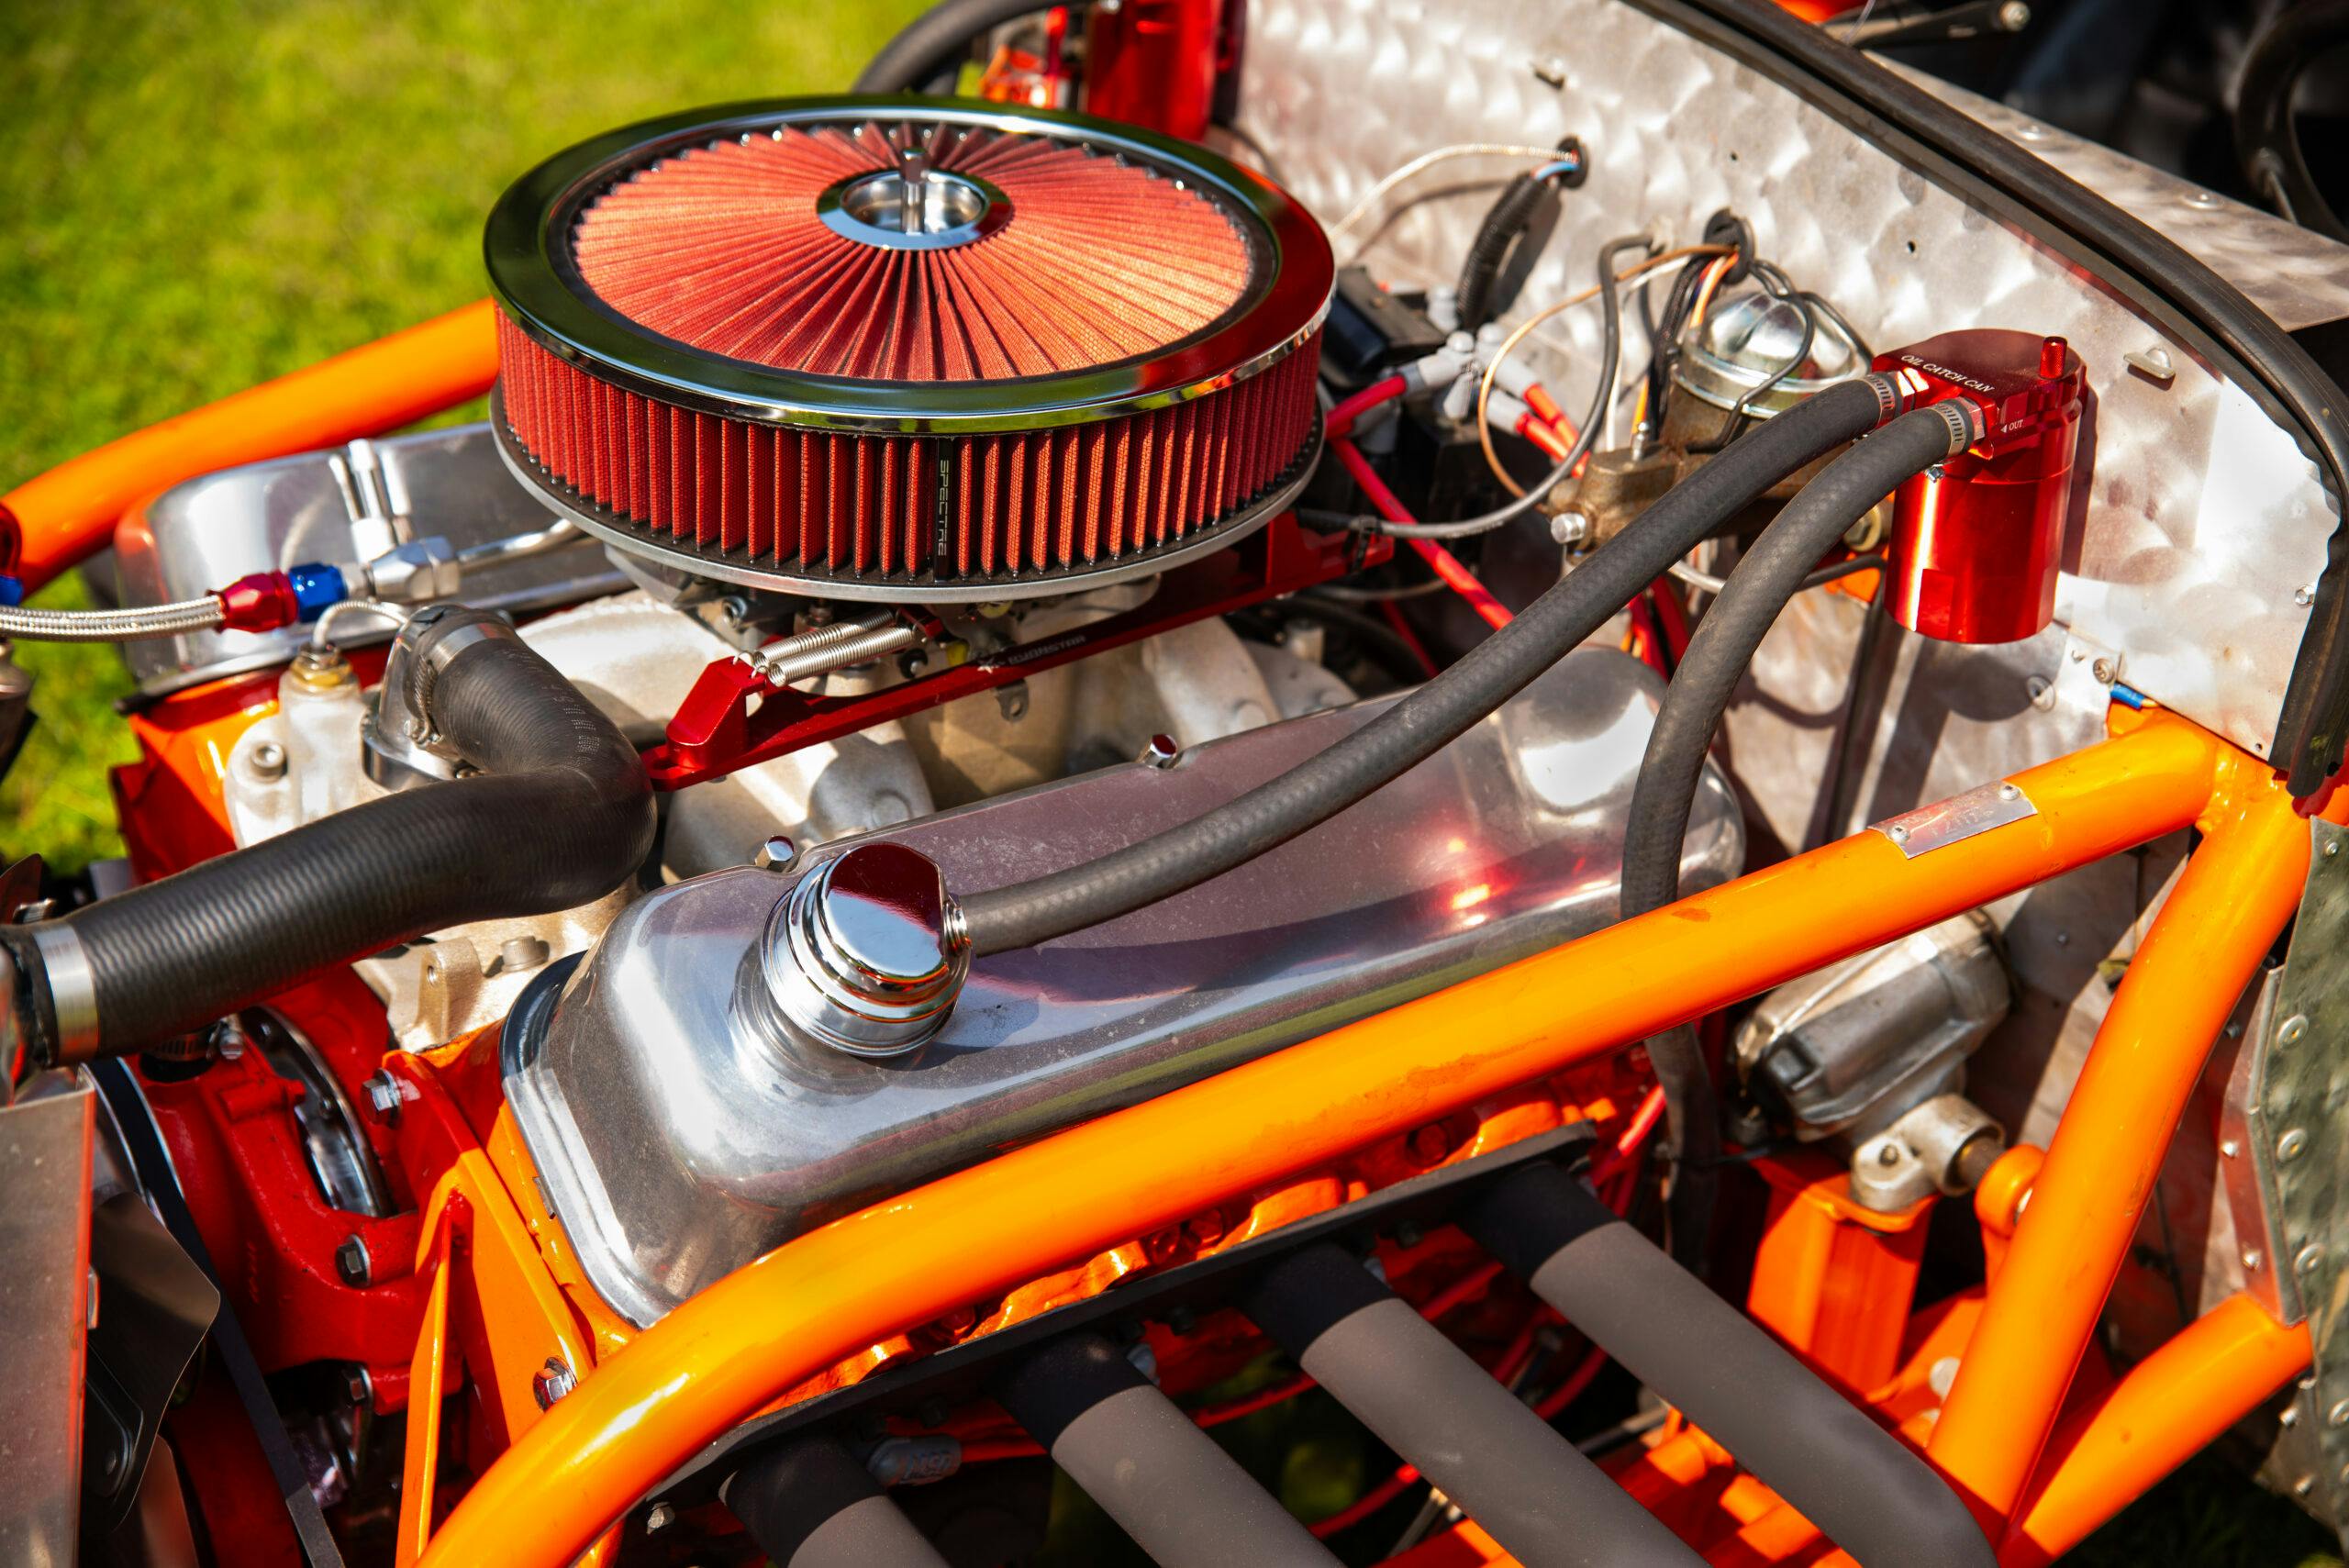 Fiat Topolino engine